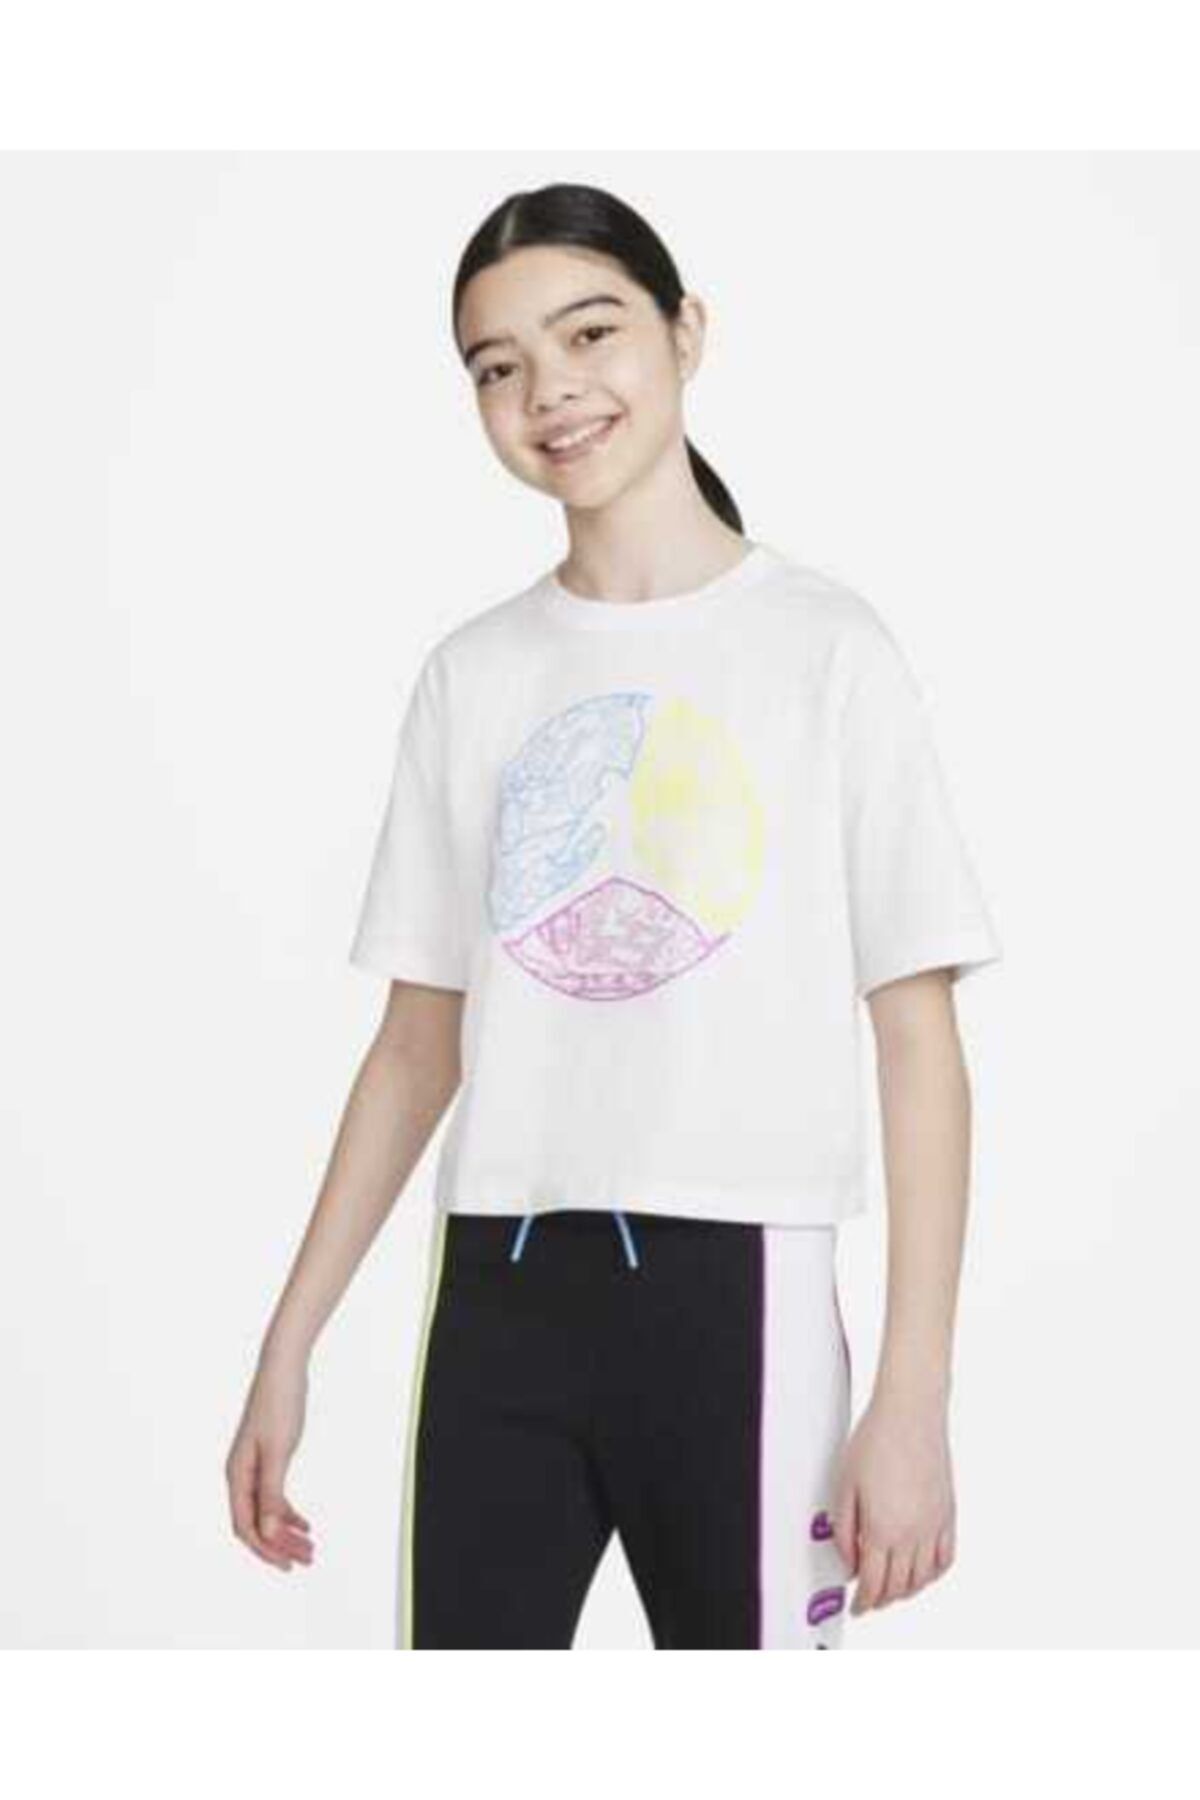 Nike Nıke Jordan Jumpman Color Up Tee Kız Çocuk Kısa Tişört 45a786-001